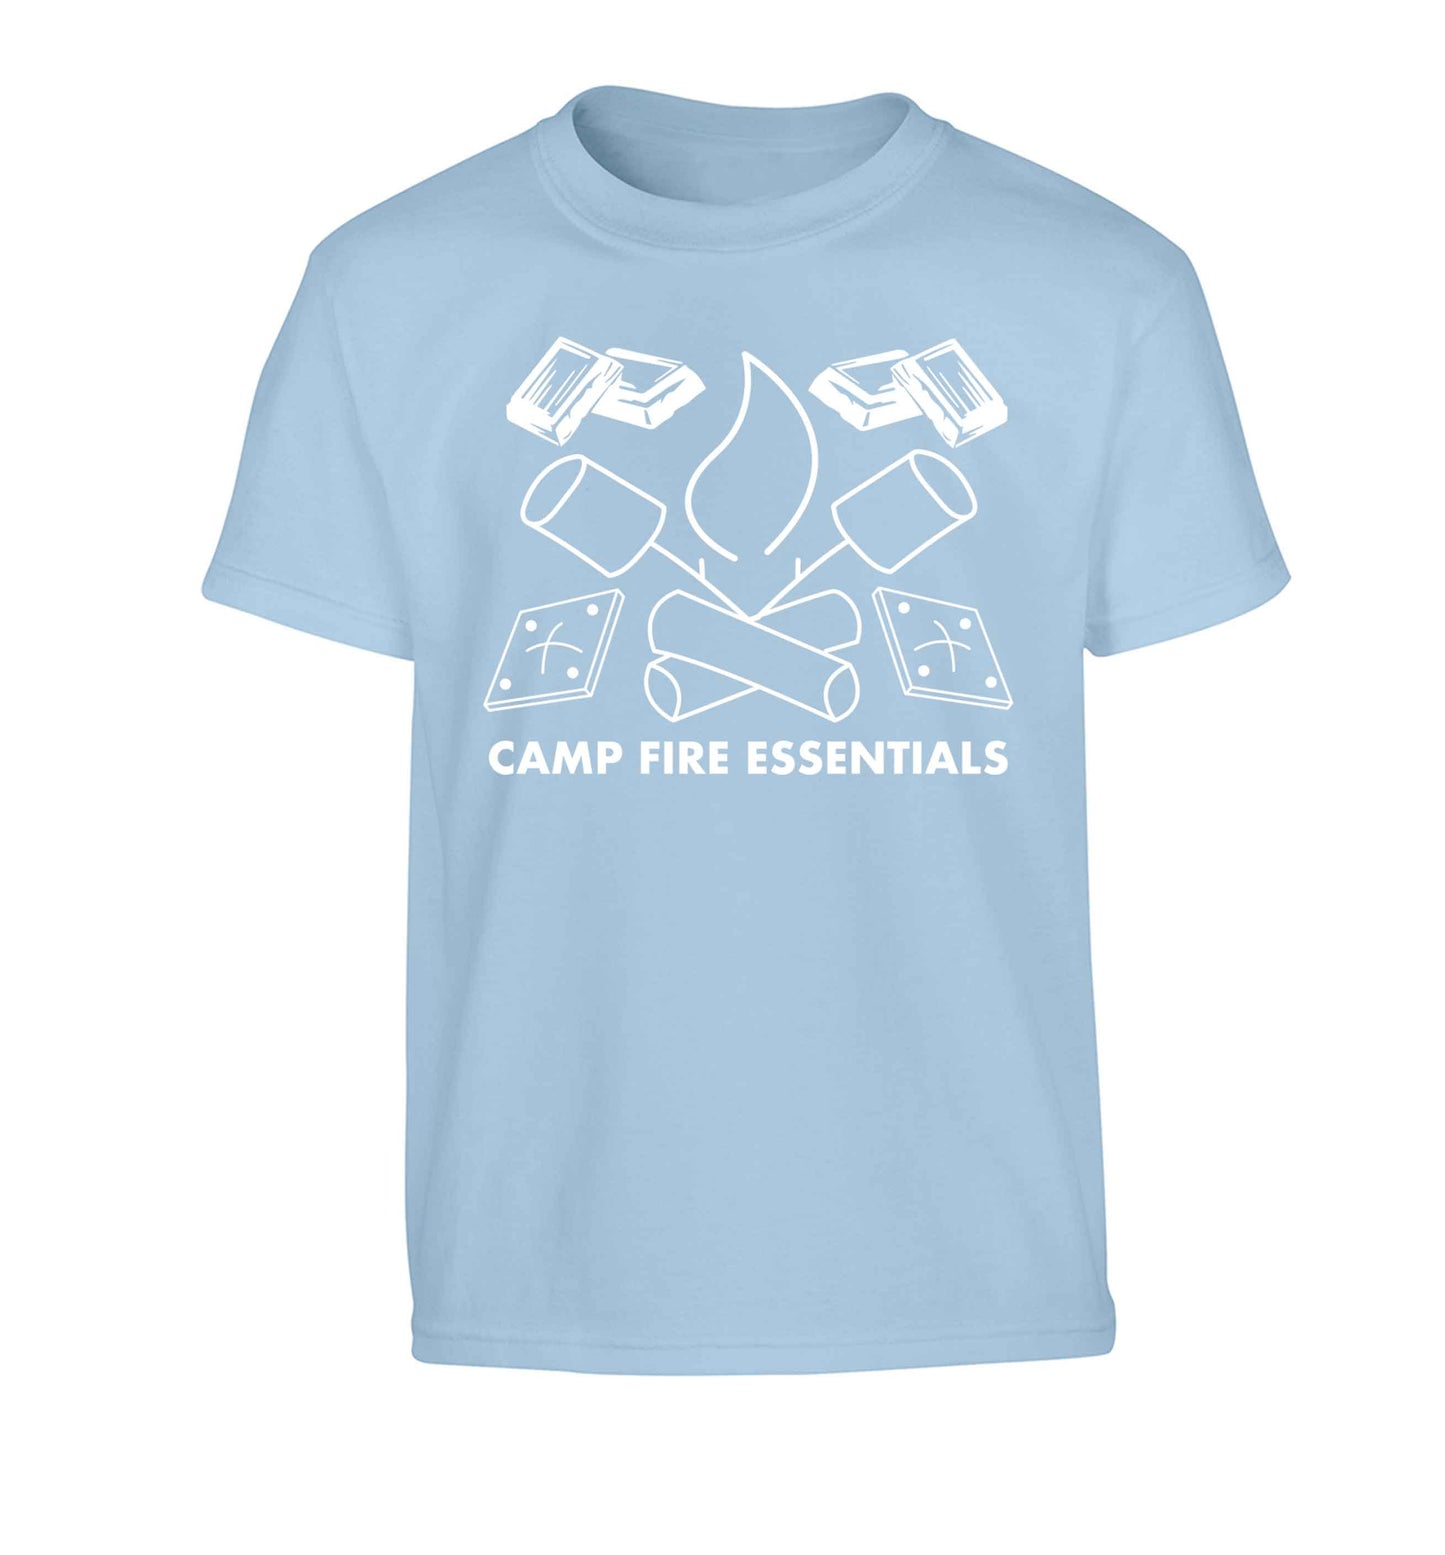 Campfire essentials Children's light blue Tshirt 12-13 Years